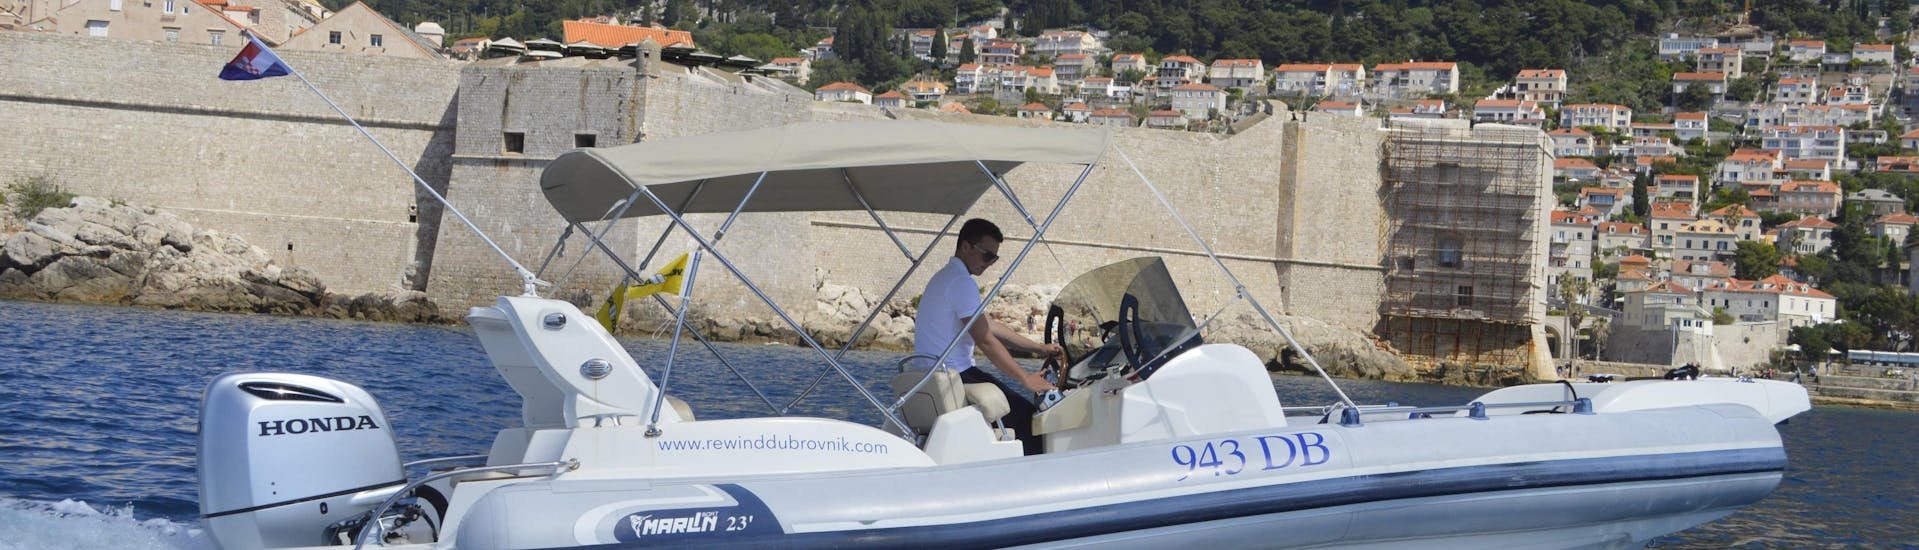 Gita privata in barca da Dubrovnik a Korčula con bagno in mare e osservazione della fauna selvatica.